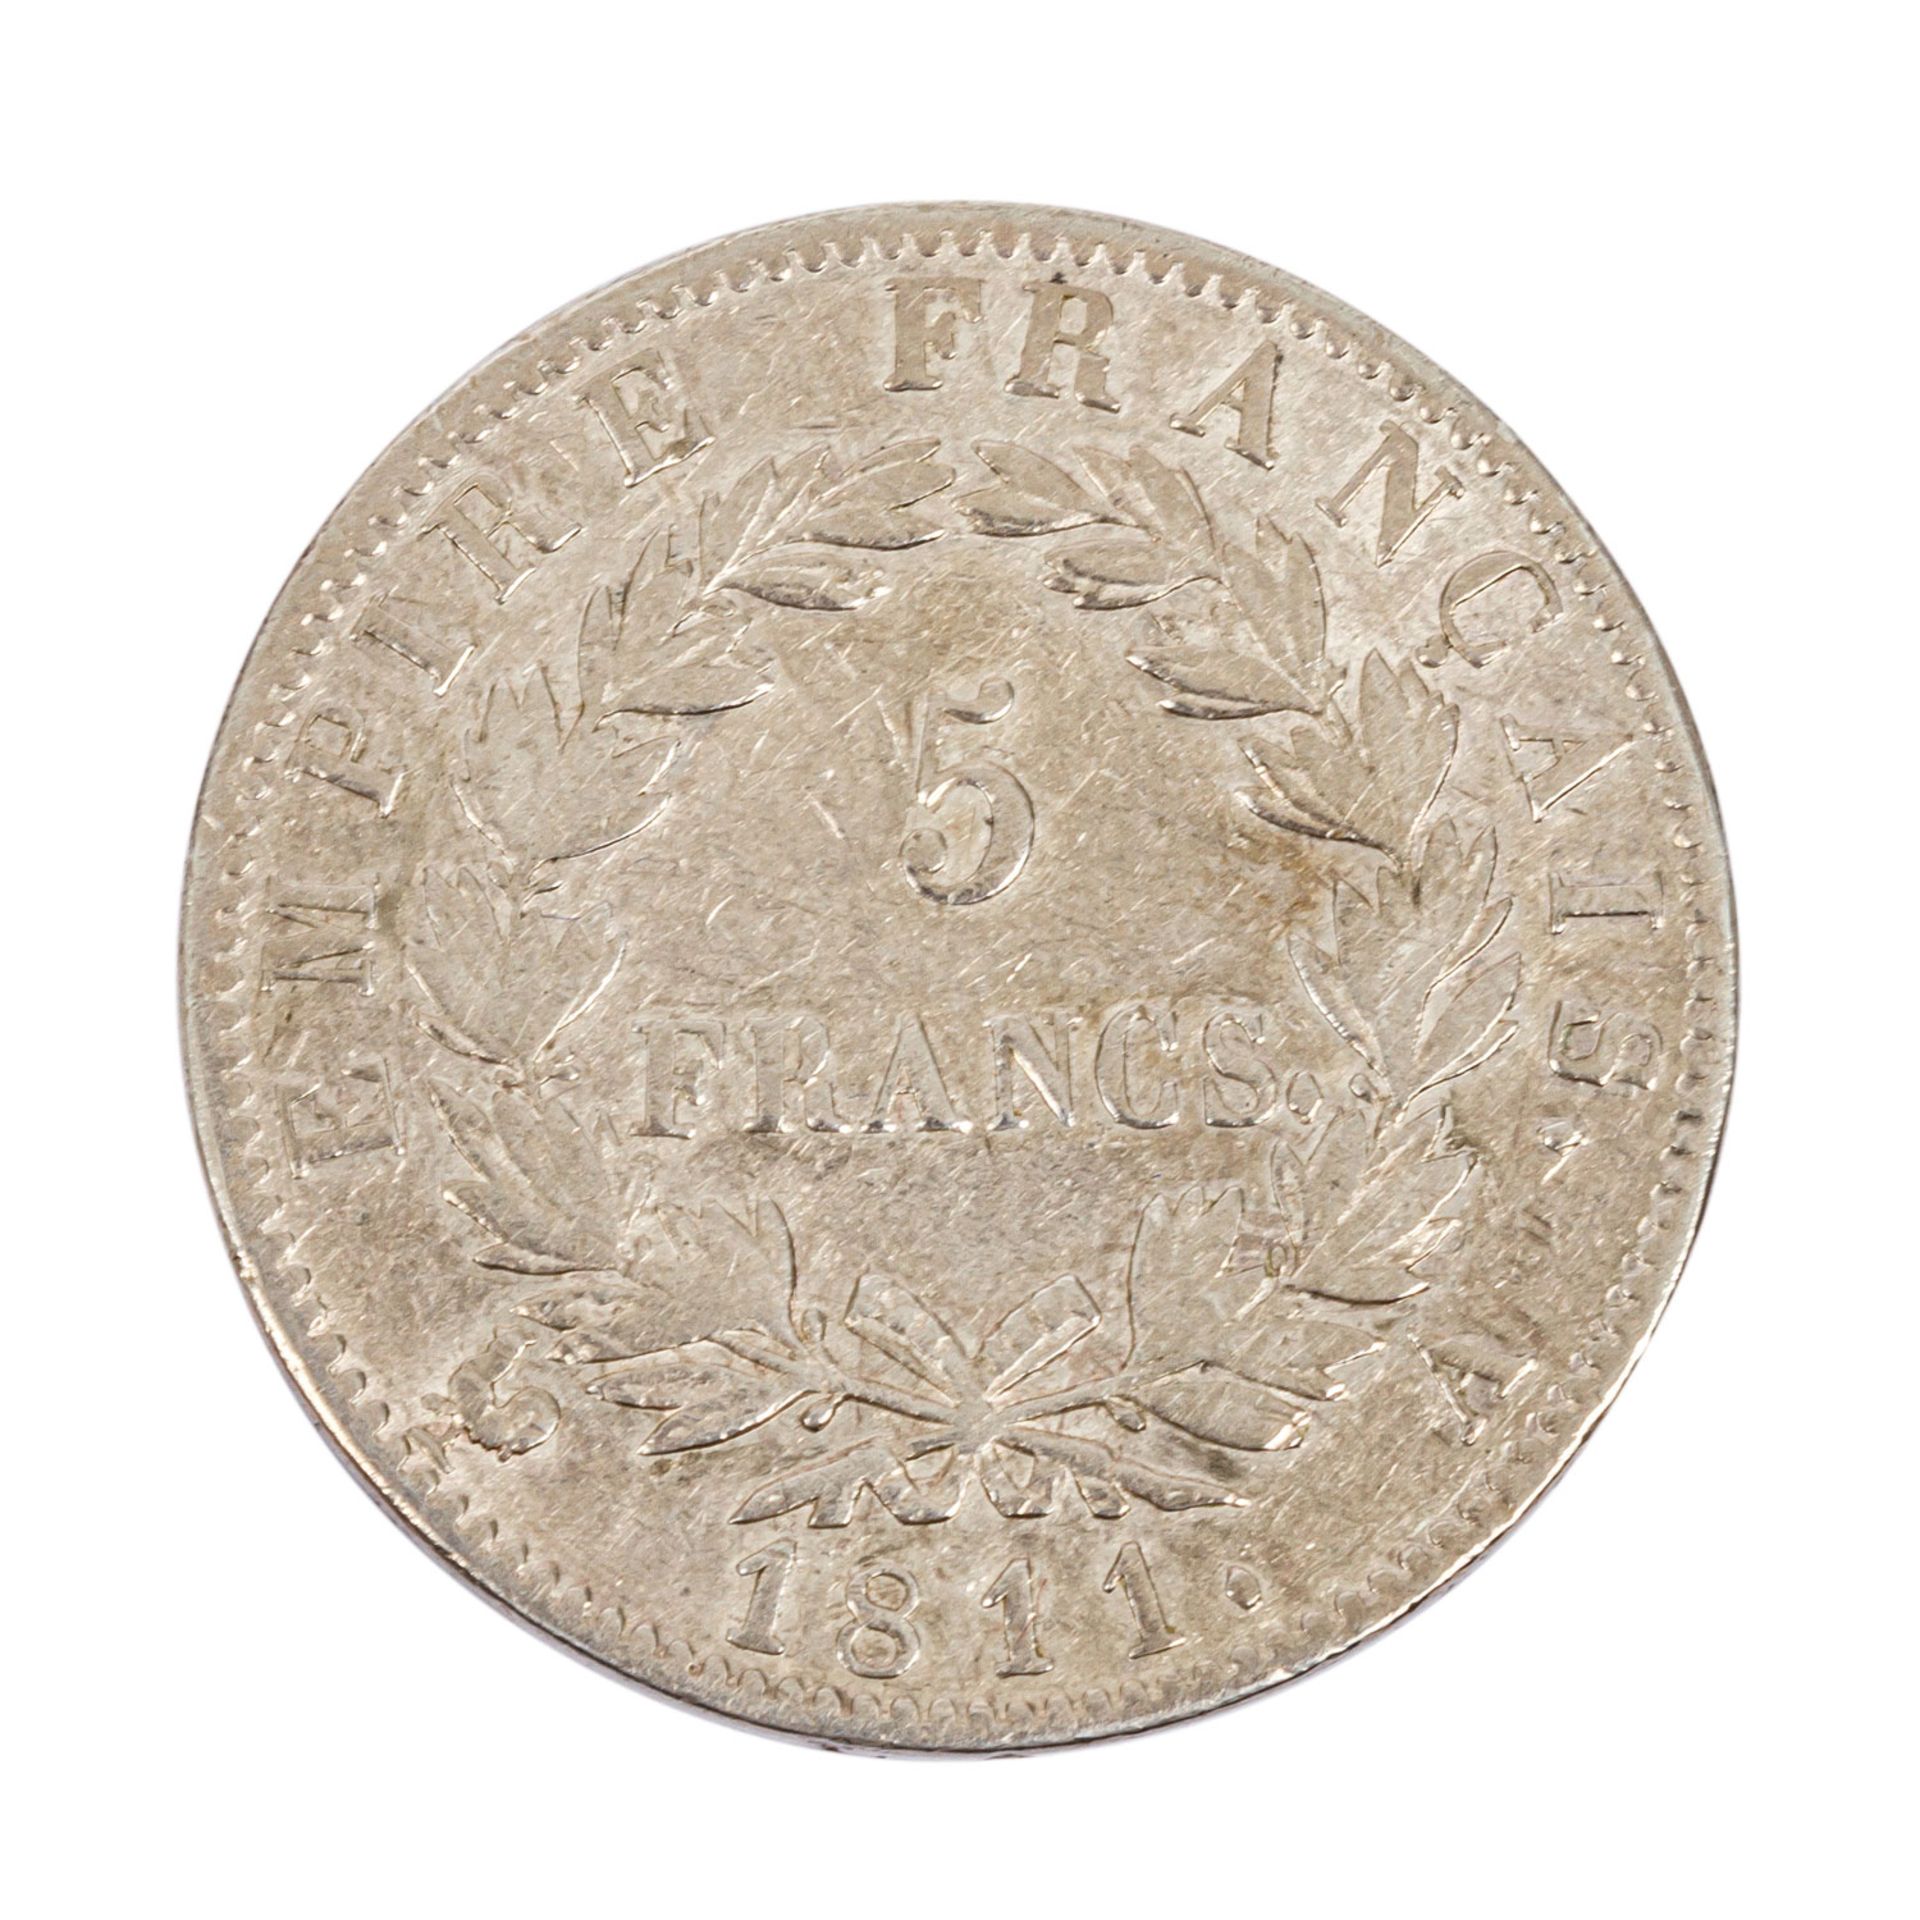 Frankreich - 5 Francs 1811/A, Paris, Silber, ss, wohl etwas gereinigt. France - 5 francs 1811/A, - Bild 2 aus 2